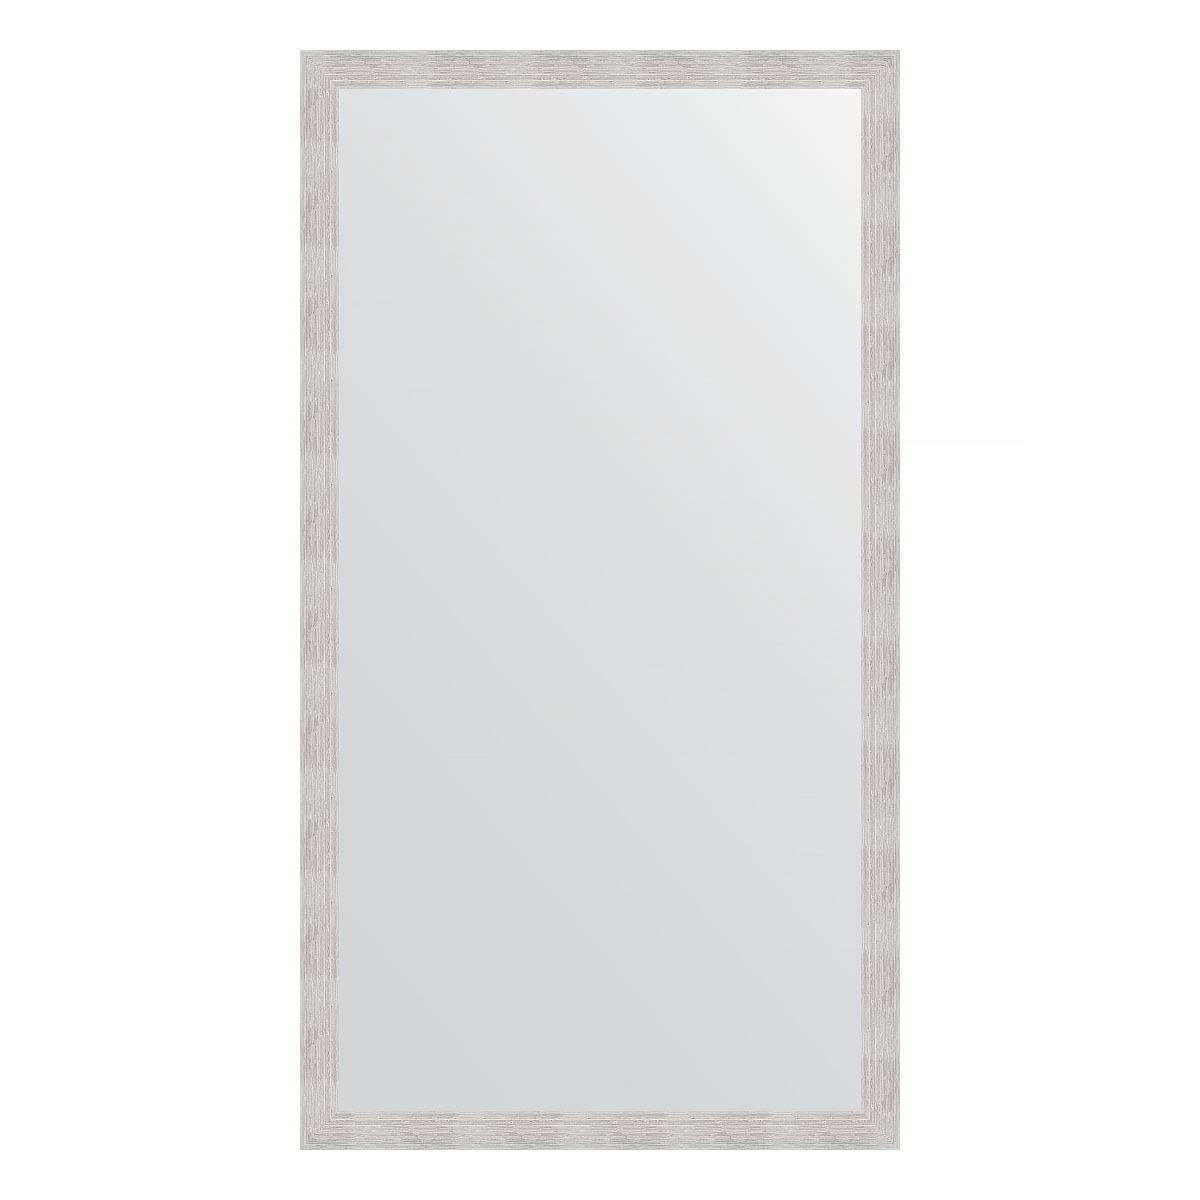 Зеркало напольное в багетной раме Evoform серебряный дождь 70 мм 108x197 см зеркало напольное 81х201 см алюминий evoform definite floor by 6012